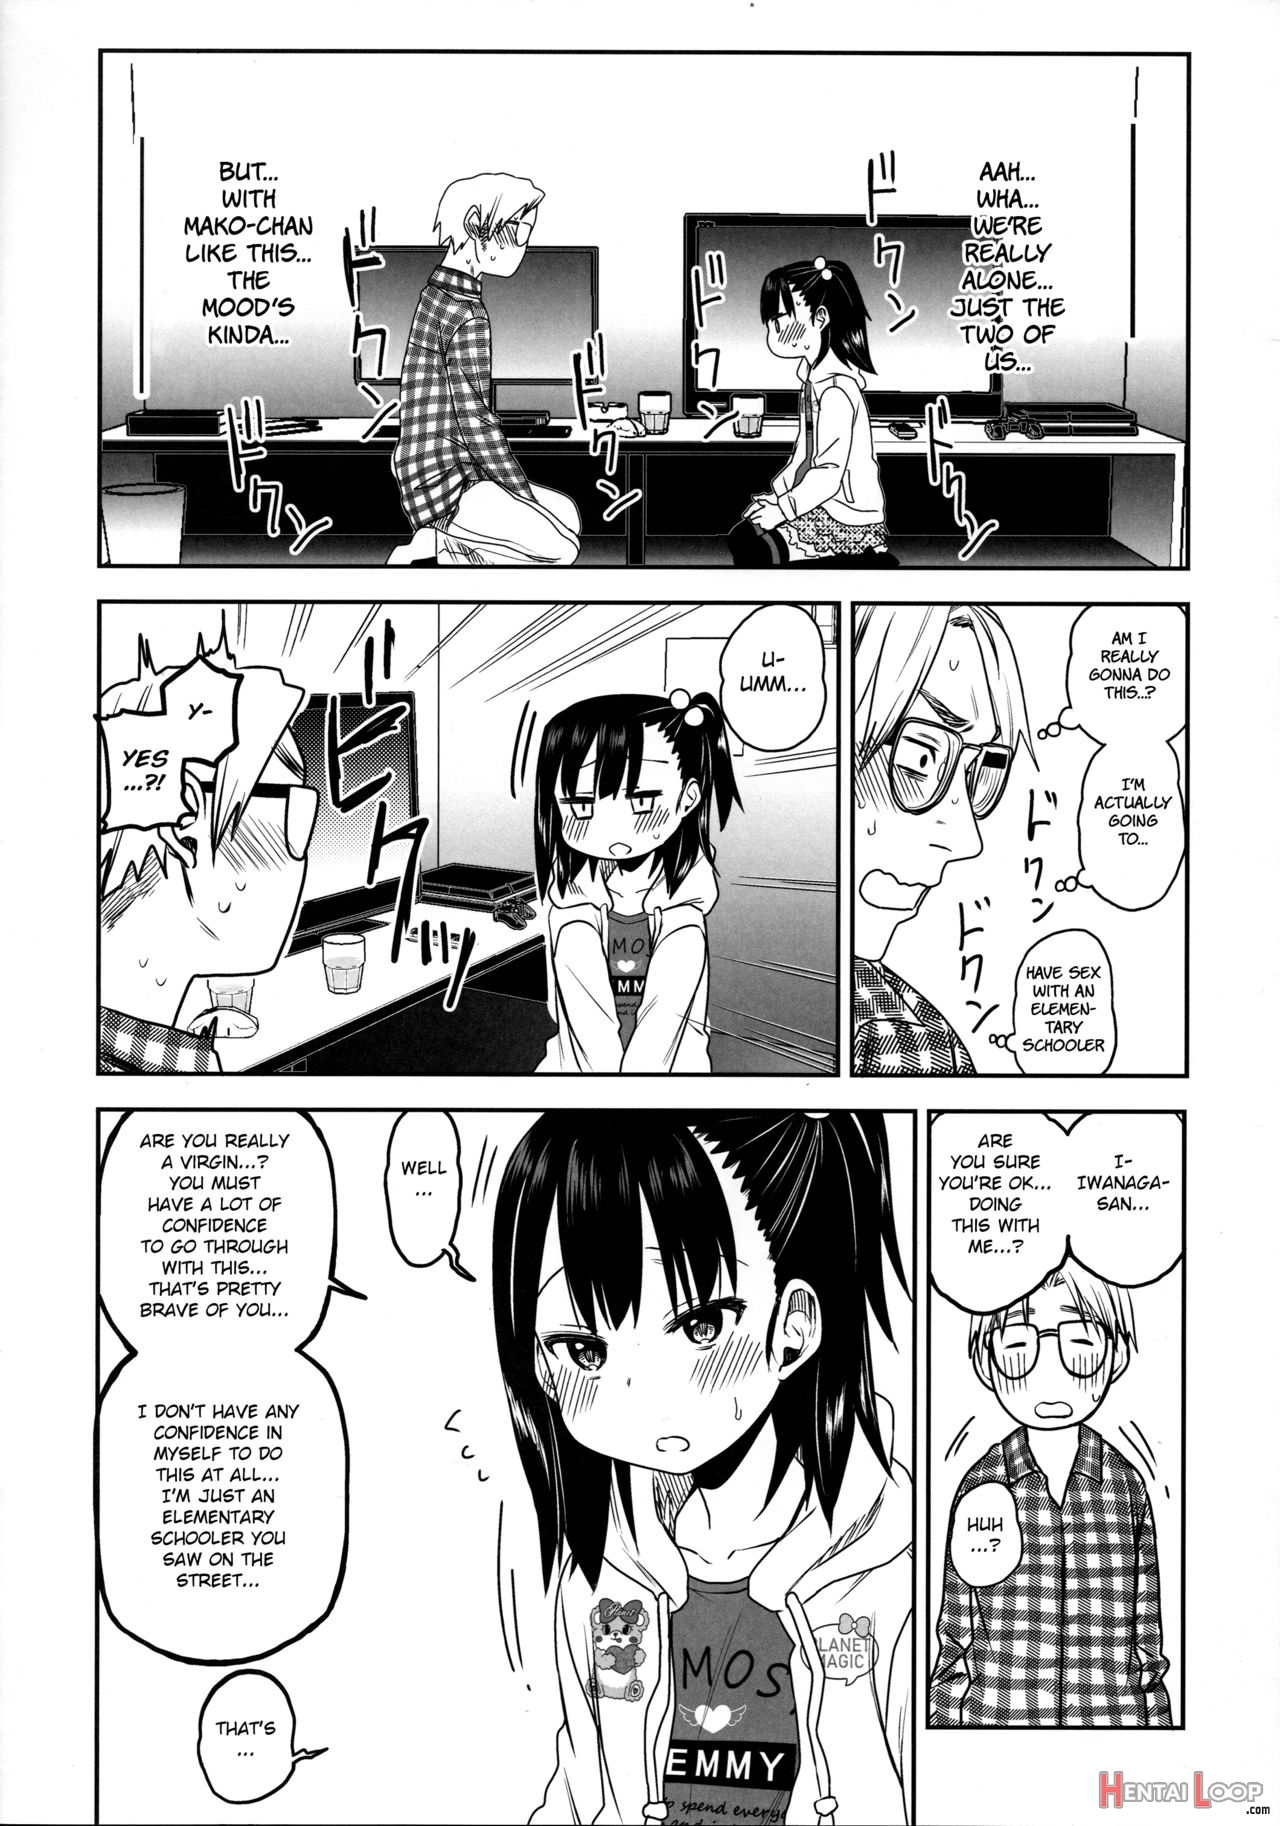 Tonari No Mako-chan Season 2 Vol. 2 page 16